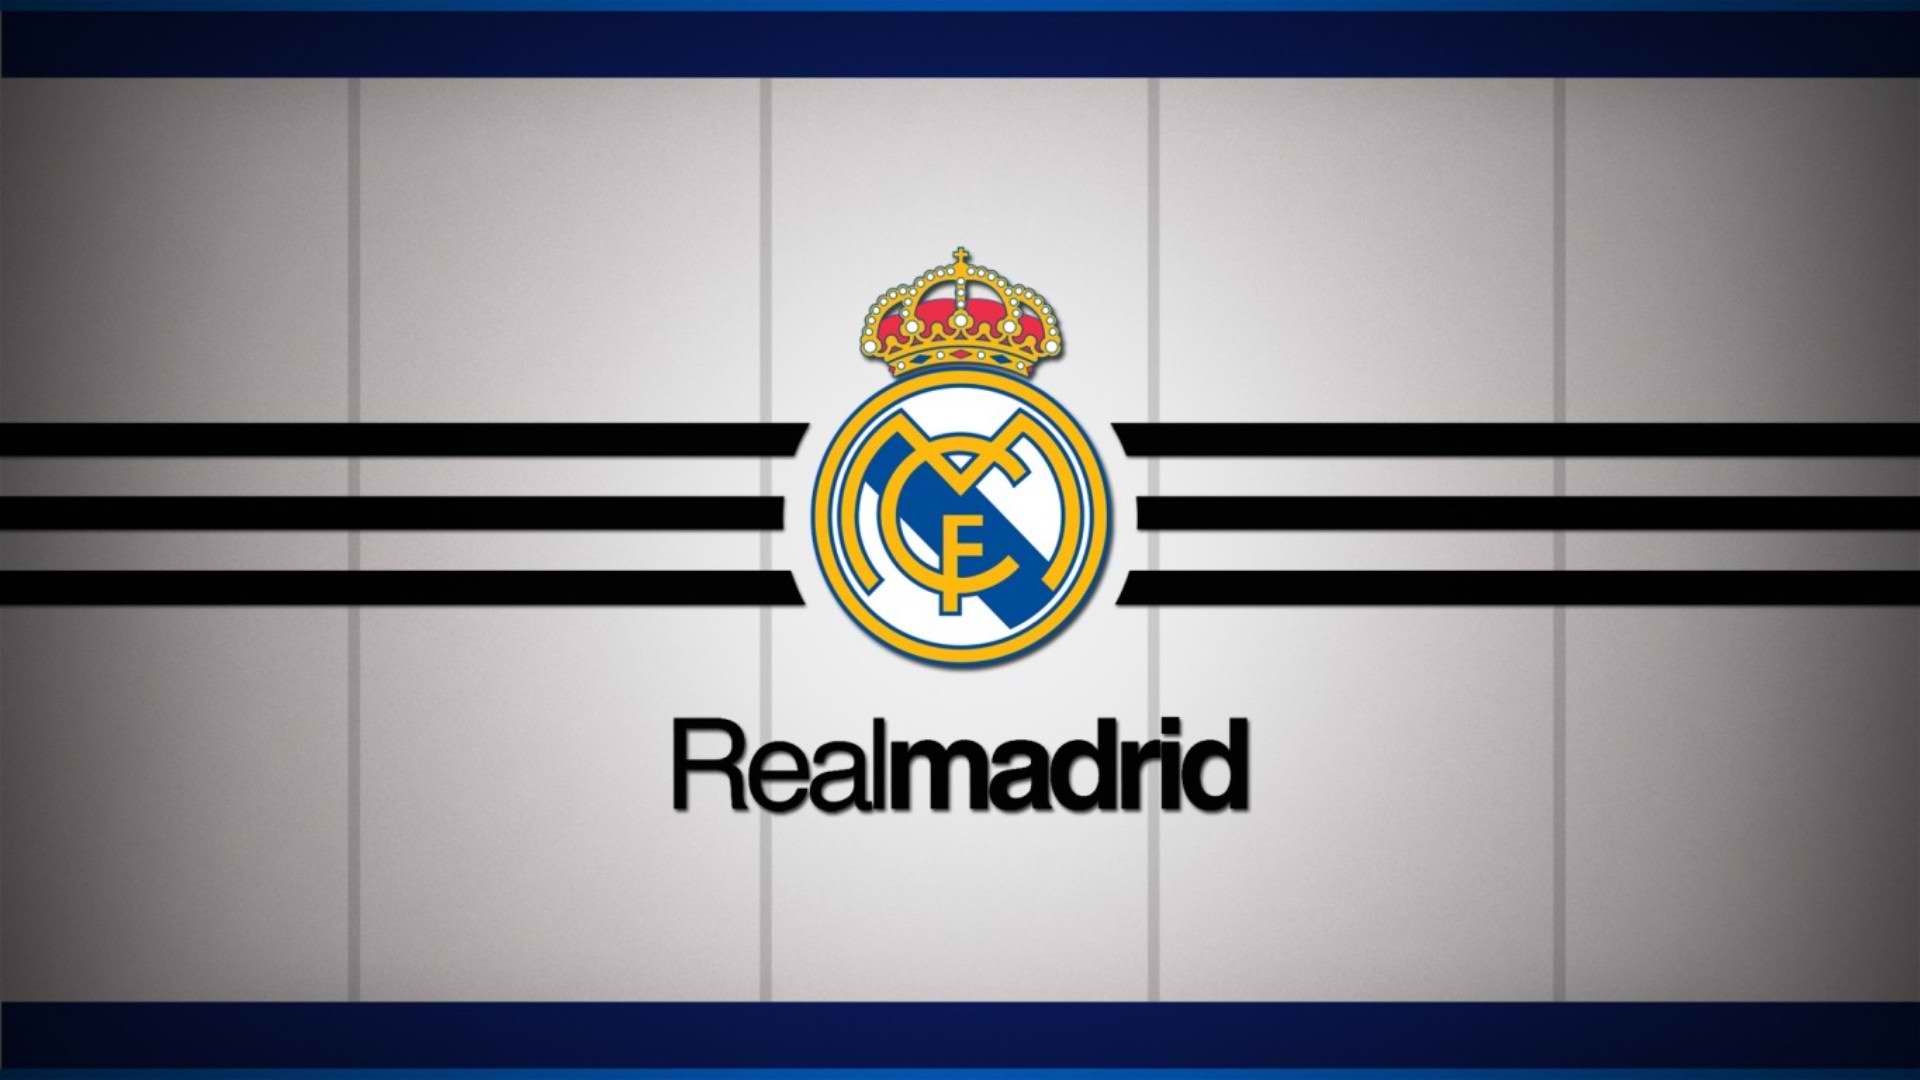 Soccer Adidas Real Madrid Wallpaper On